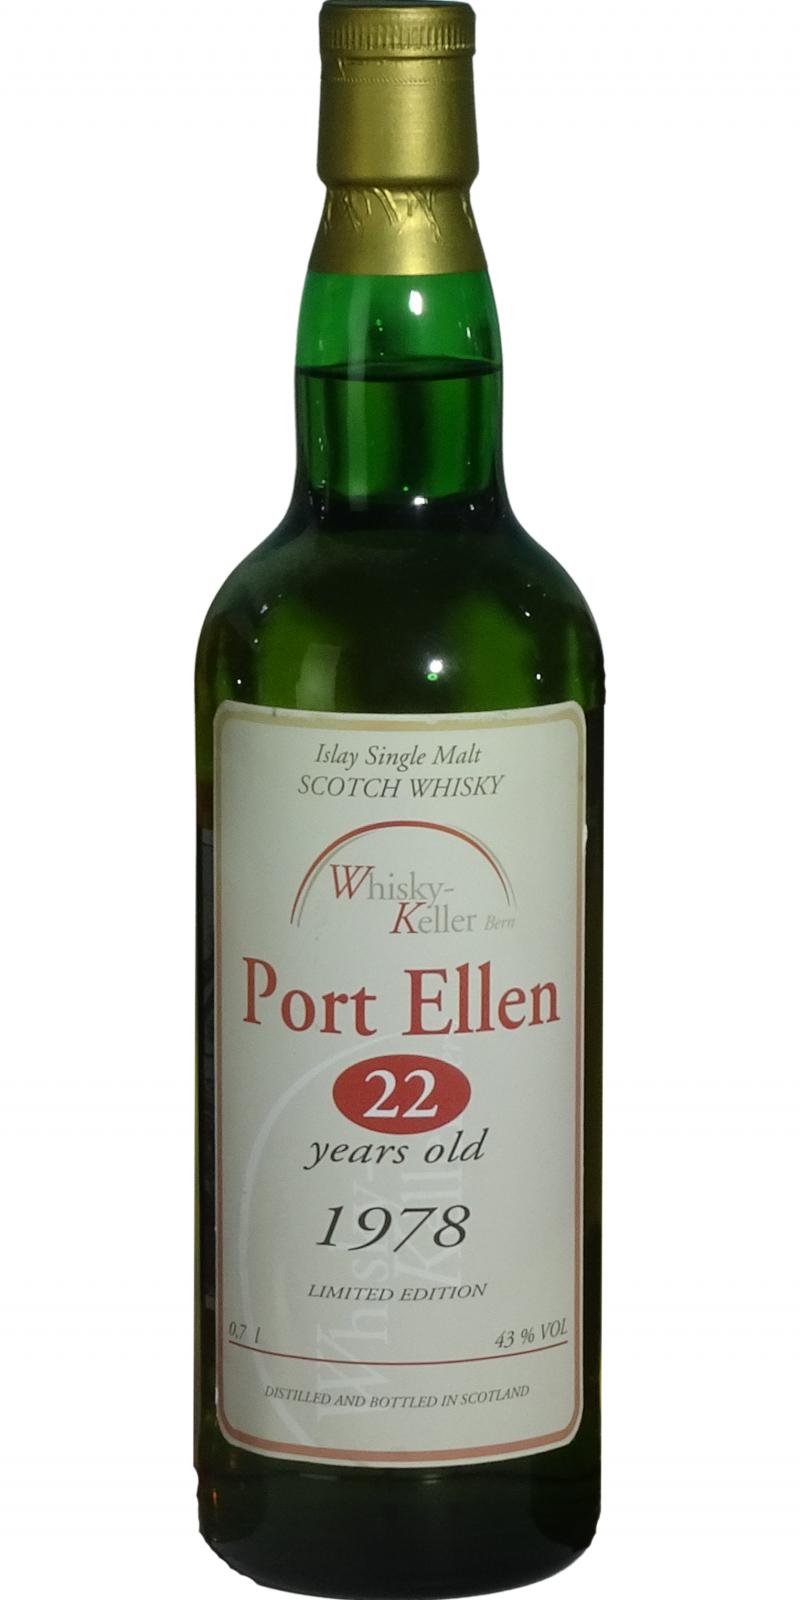 Port Ellen 1978 UD Whisky-Keller Bern 43% 700ml